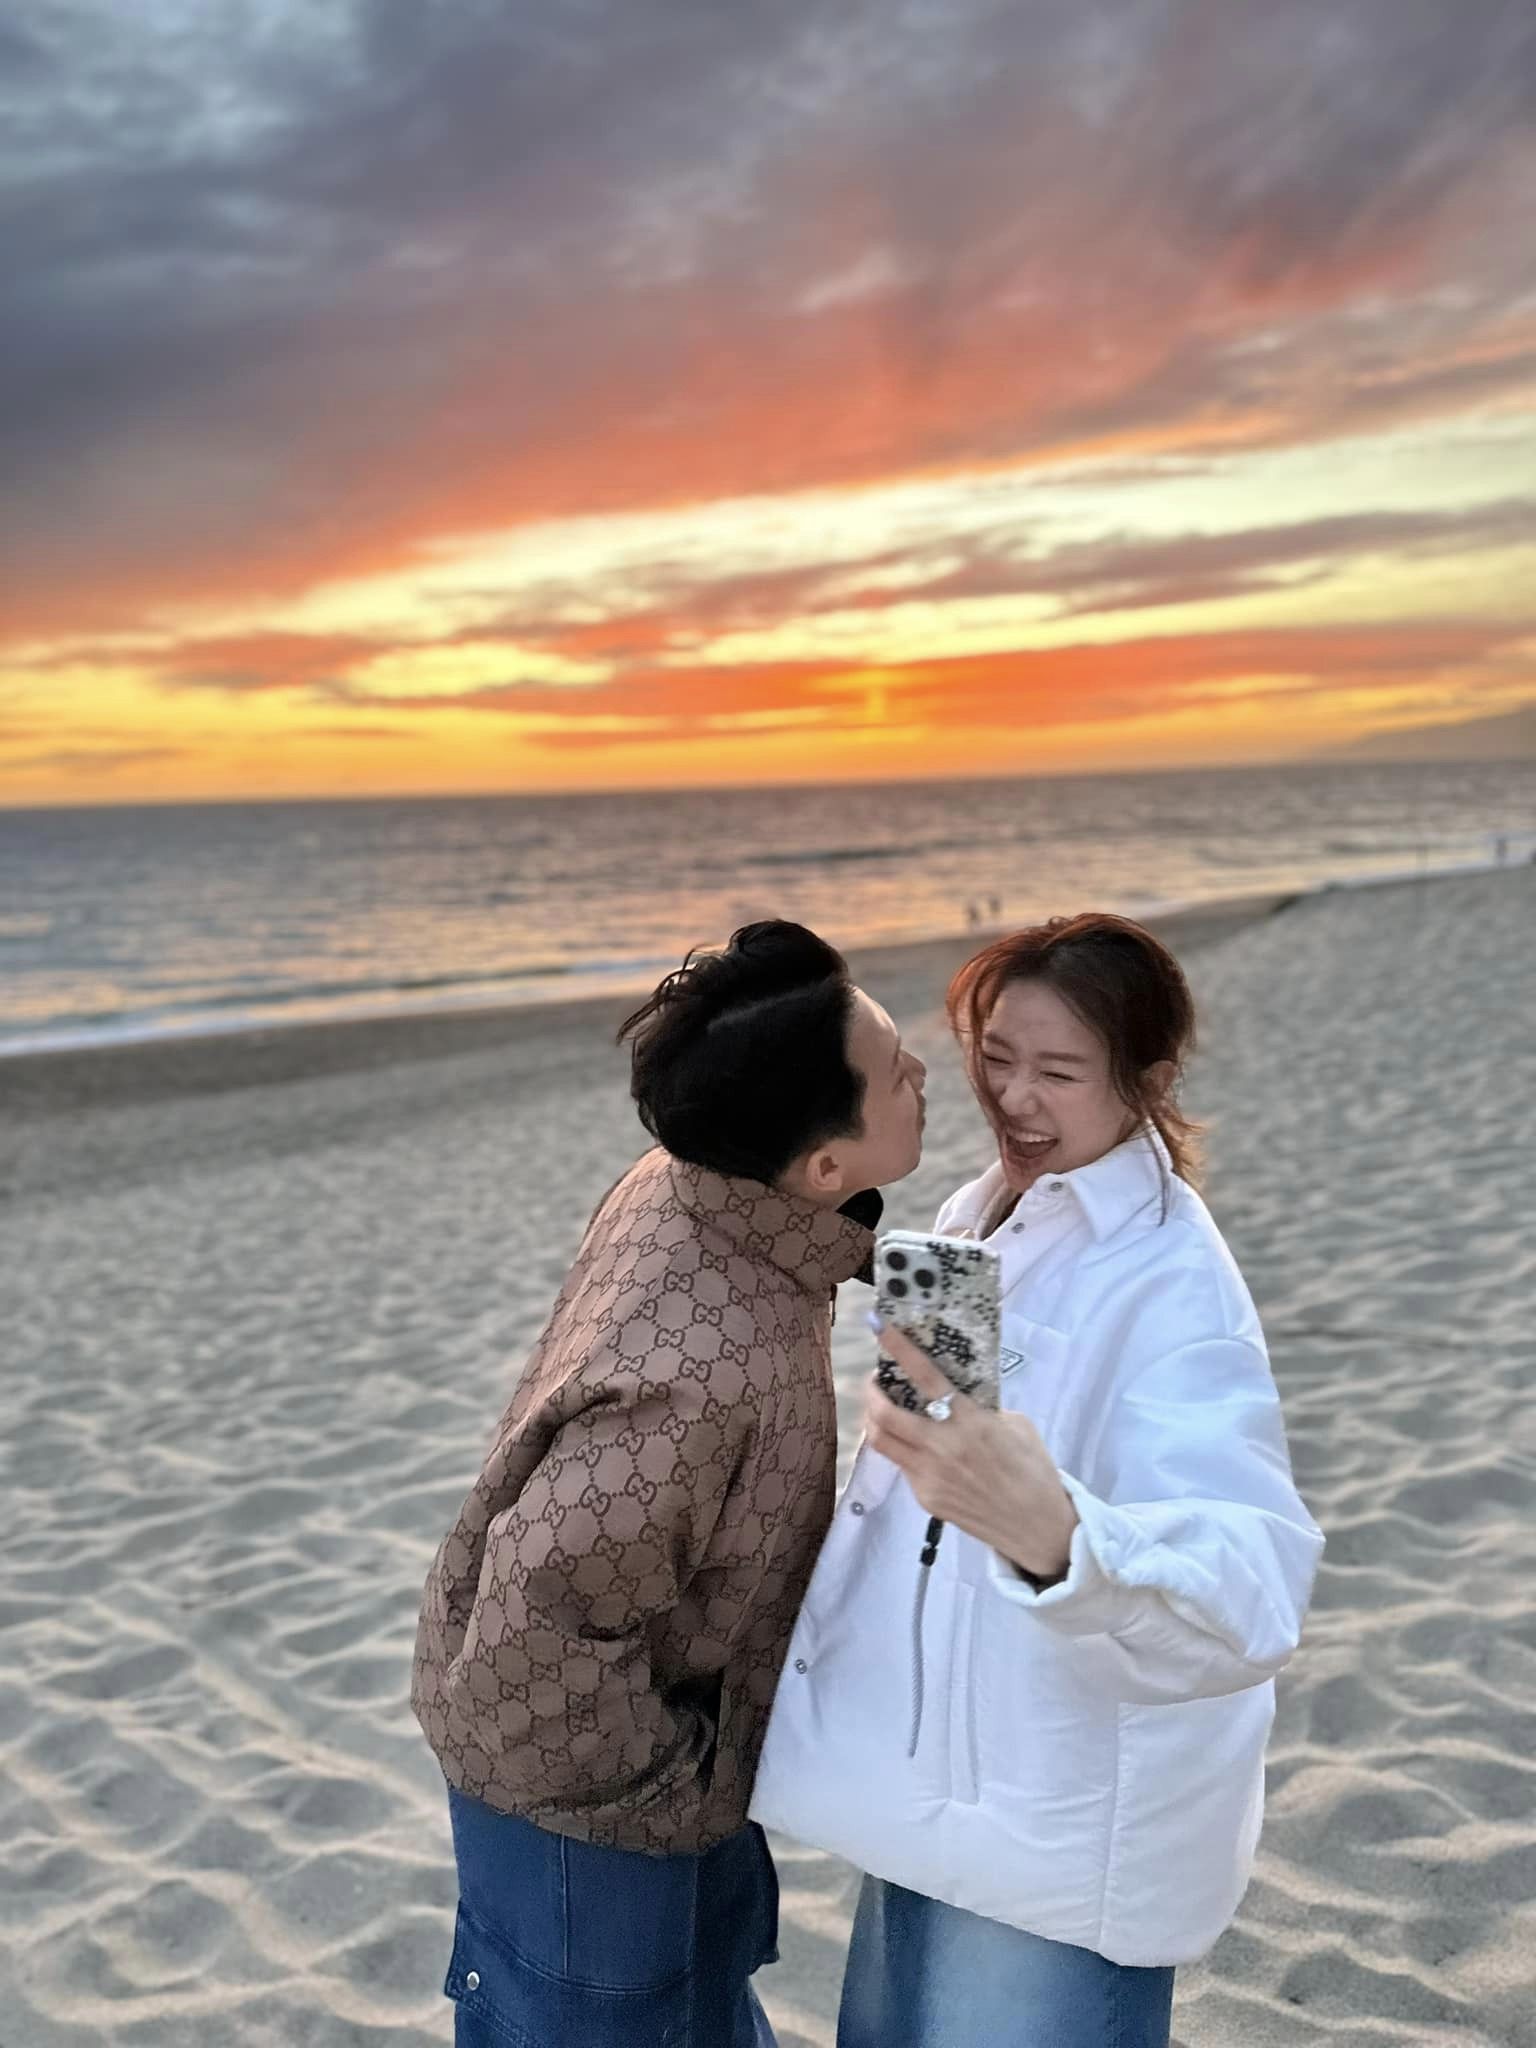 Trấn Thành đăng tải loạt ảnh tình tứ bên bãi biển cùng bà xã Hari Won. Ảnh: Trấn Thành